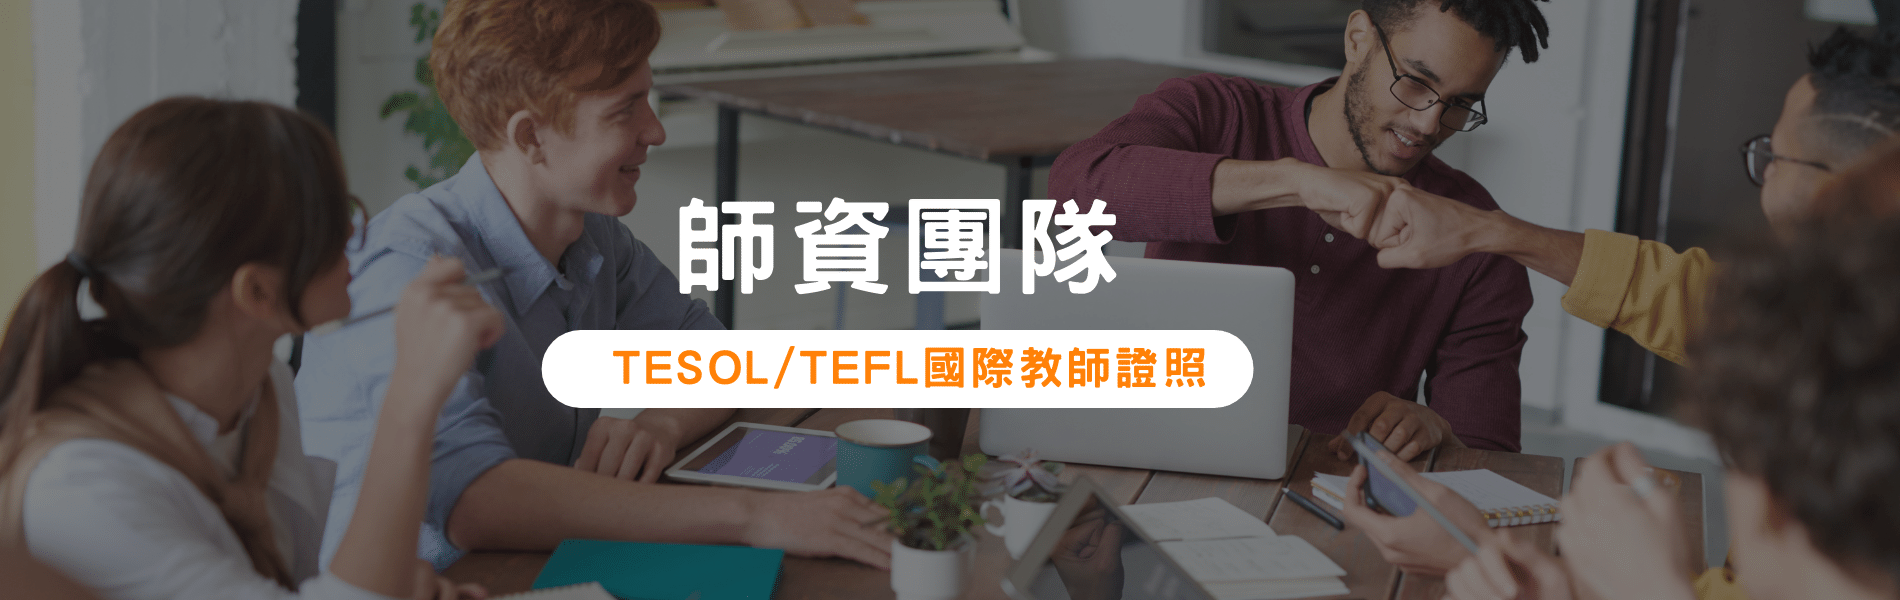 師資團隊TESOL:TEFL國際教師證照